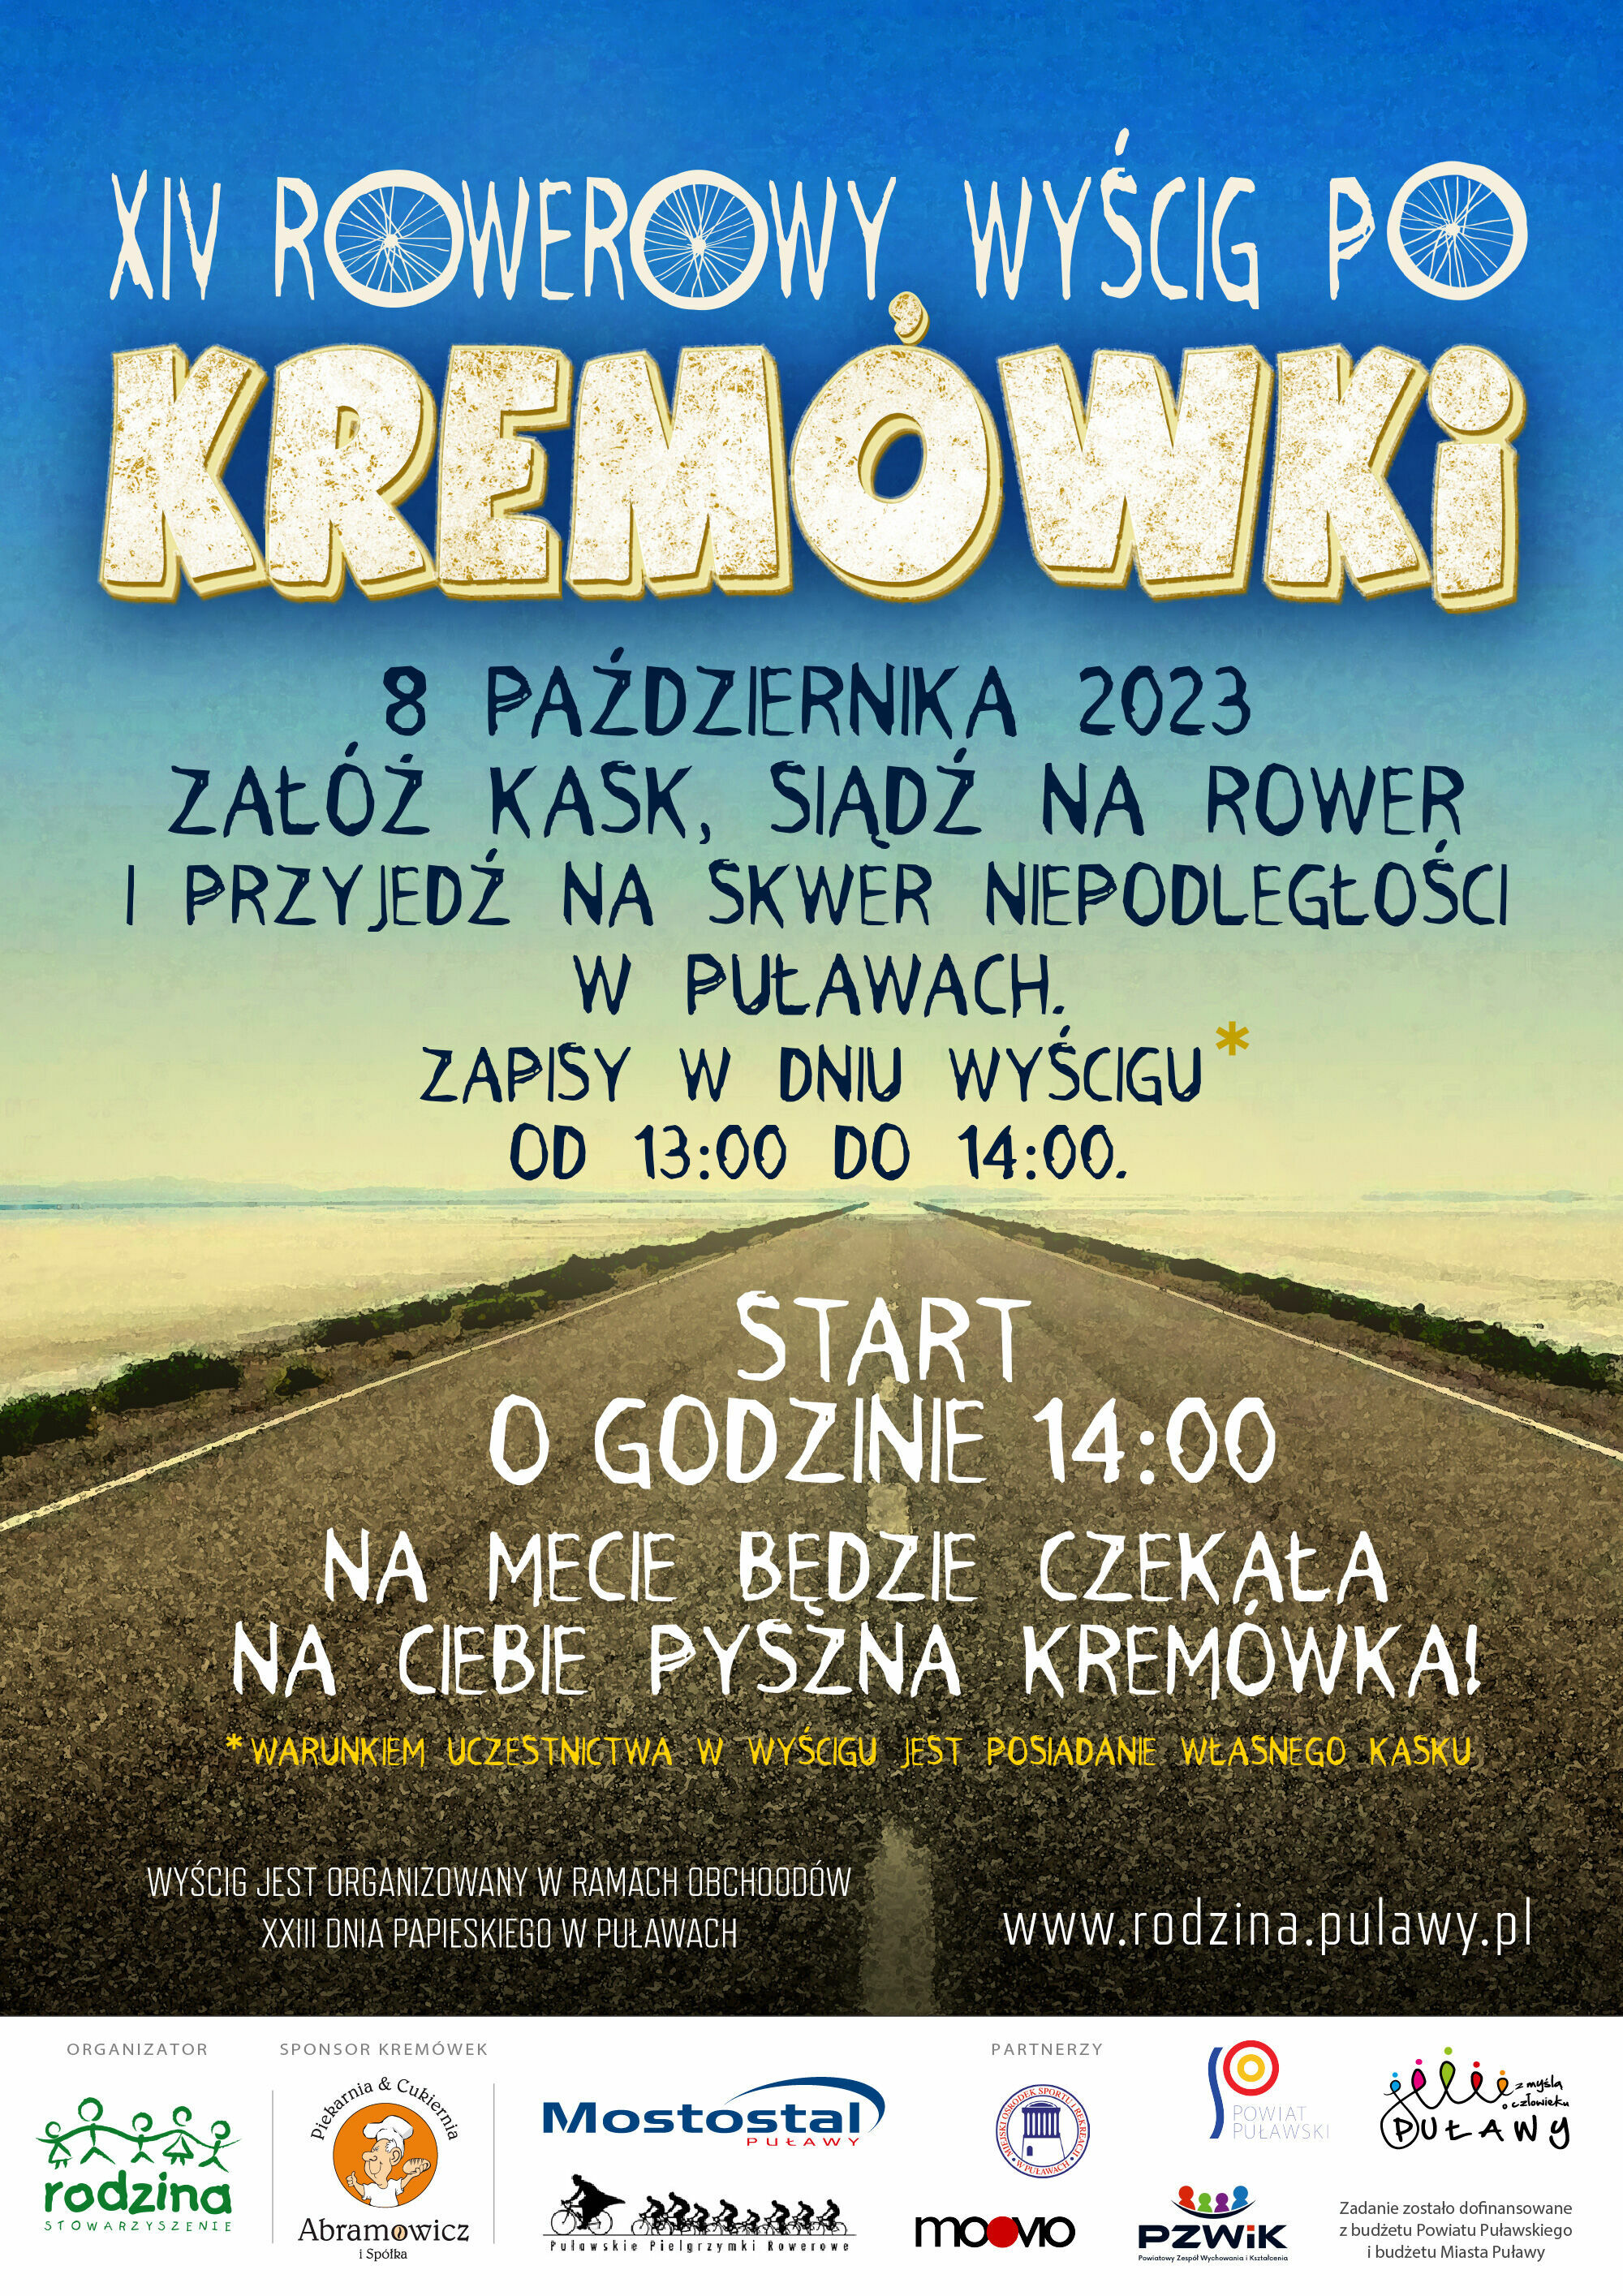 Plakat wydarzenia sportowego "XIV Rowerowy Wyścig Po Kremówki" z datą 8 października 2023, informacją o miejscu, które to jest Puławy, oraz szczegółami dotyczącymi rejestracji i startu. Tło zawiera obraz polnej drogi.